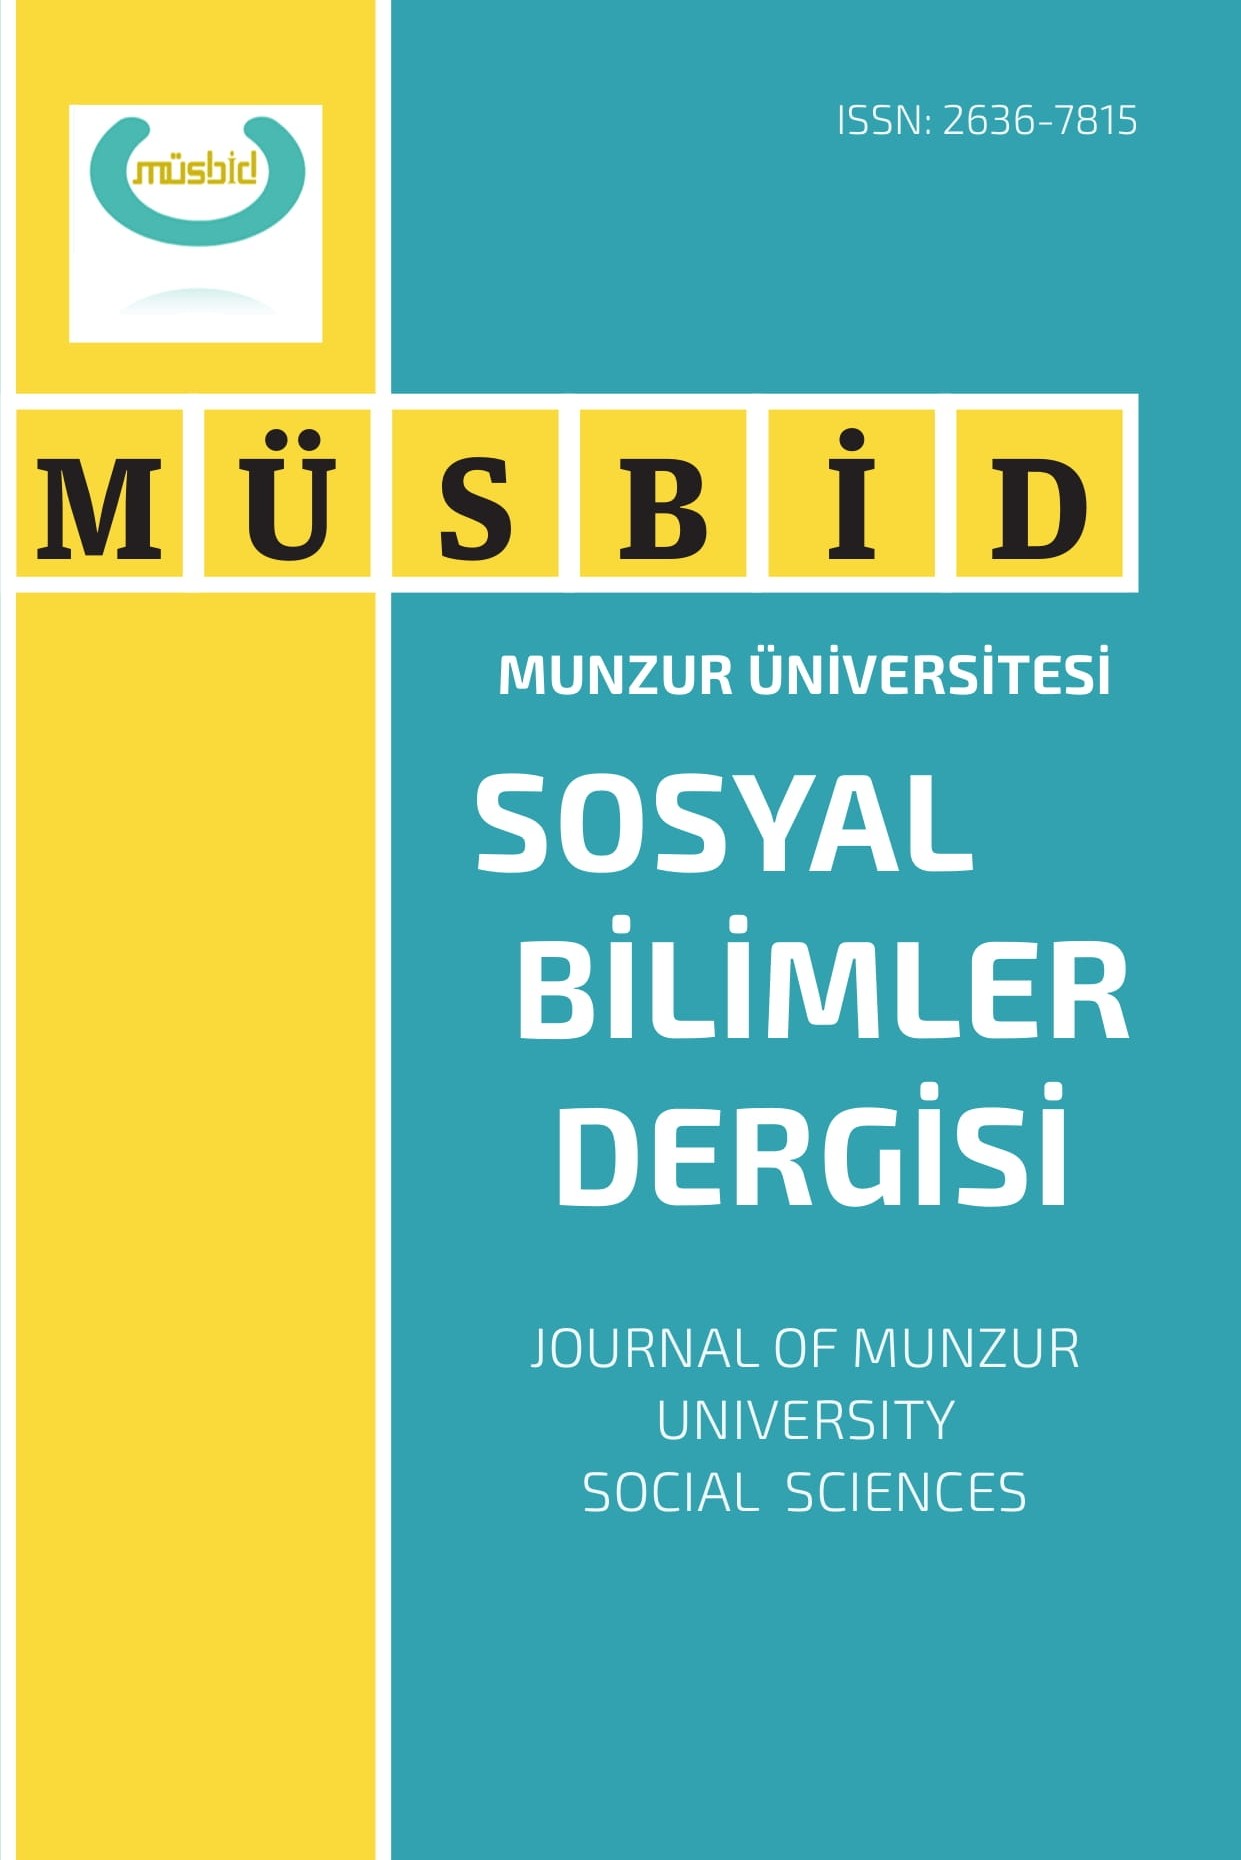 Munzur Üniversitesi Sosyal Bilimler Dergisi